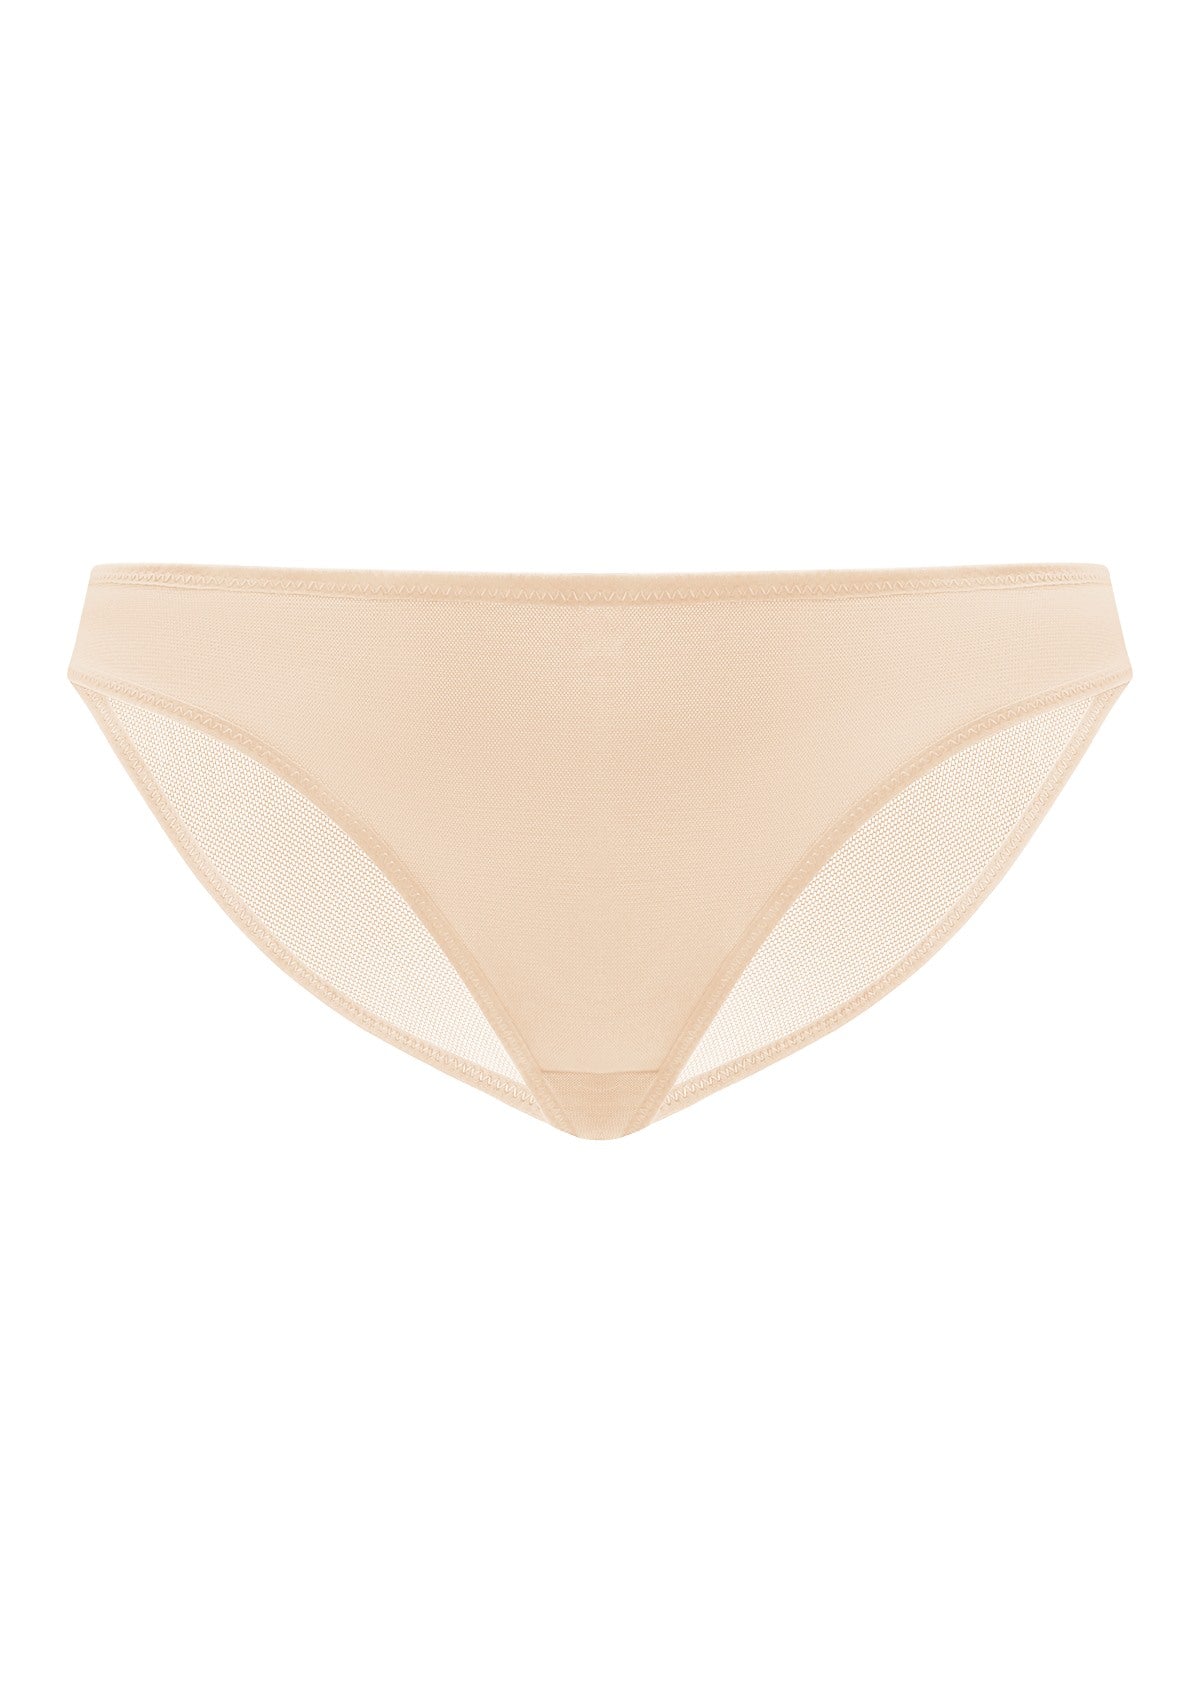 HSIA Billie Smooth Sheer Mesh Lightweight Soft Comfy Bikini Underwear - M / Dark Green